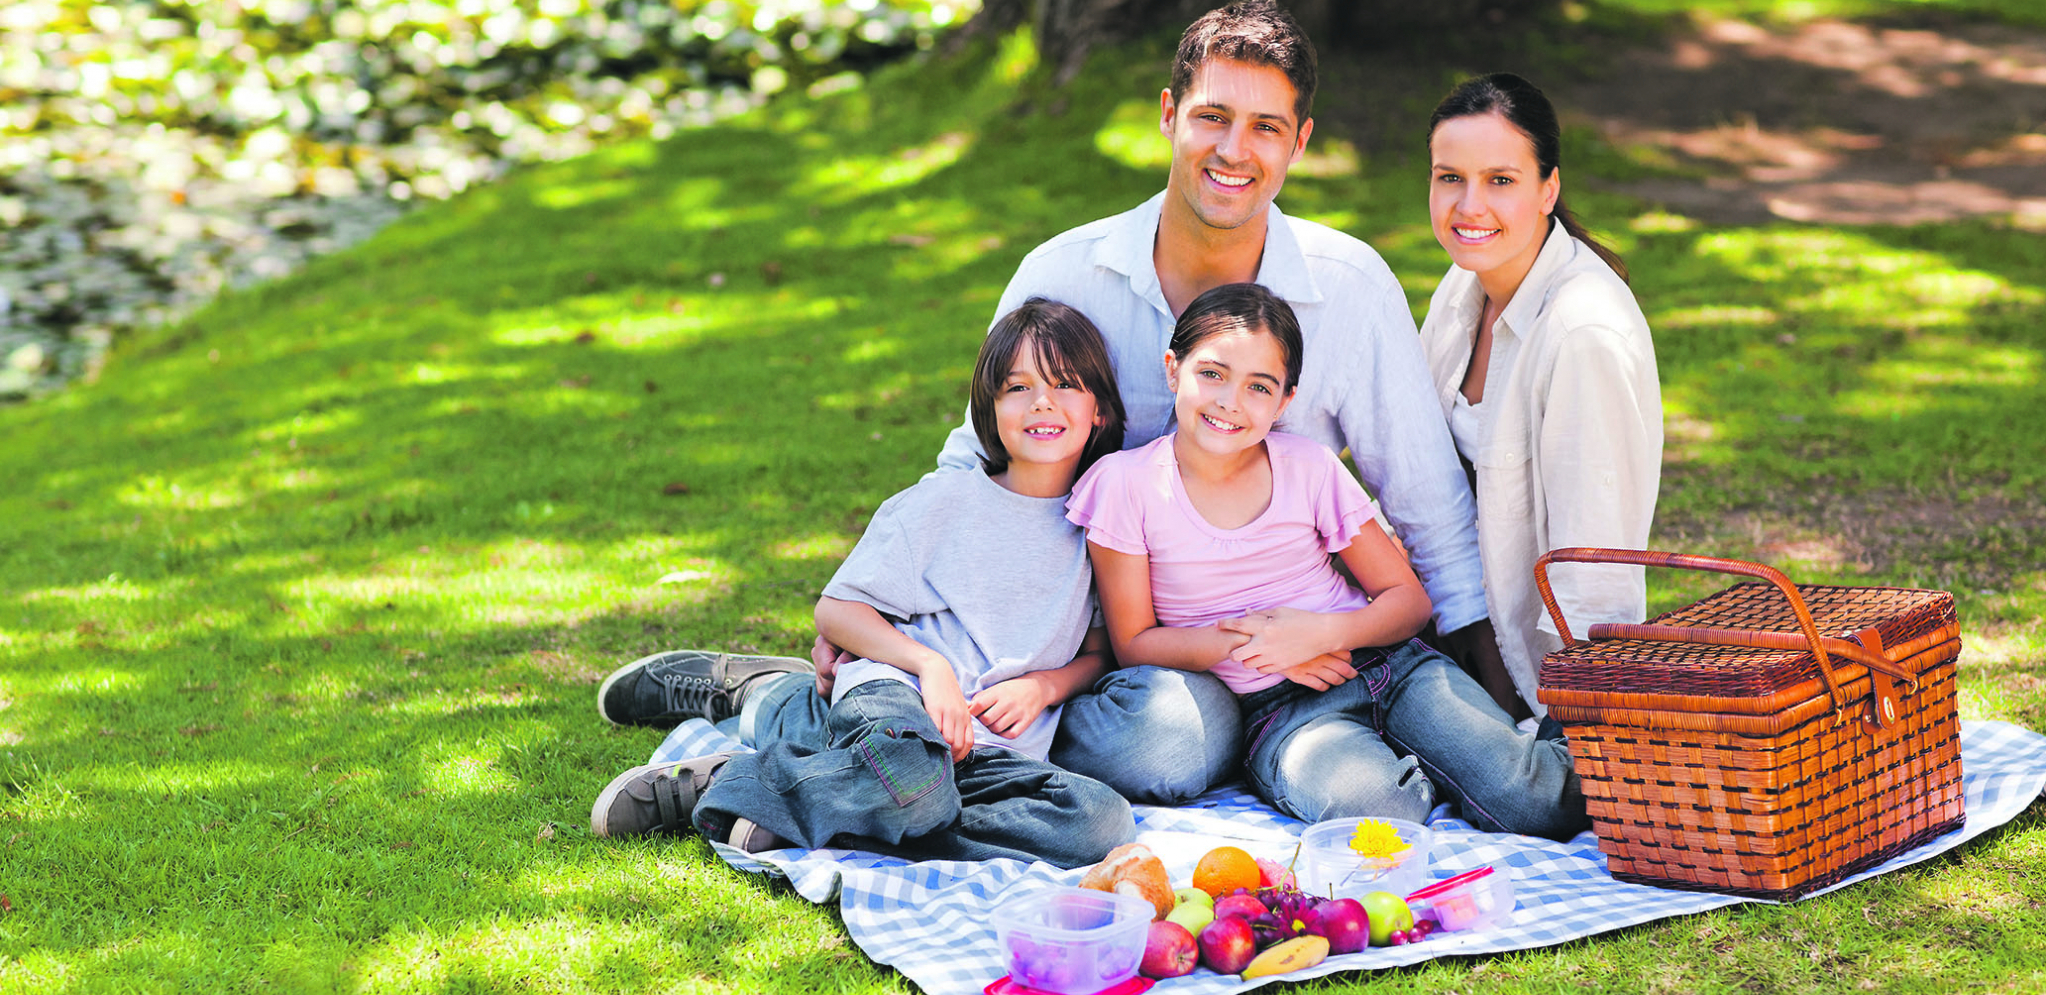 Go love family. Семья на пикнике. Счастливая семья. Счастливая семья на природе. Пикник с семьей на природе.